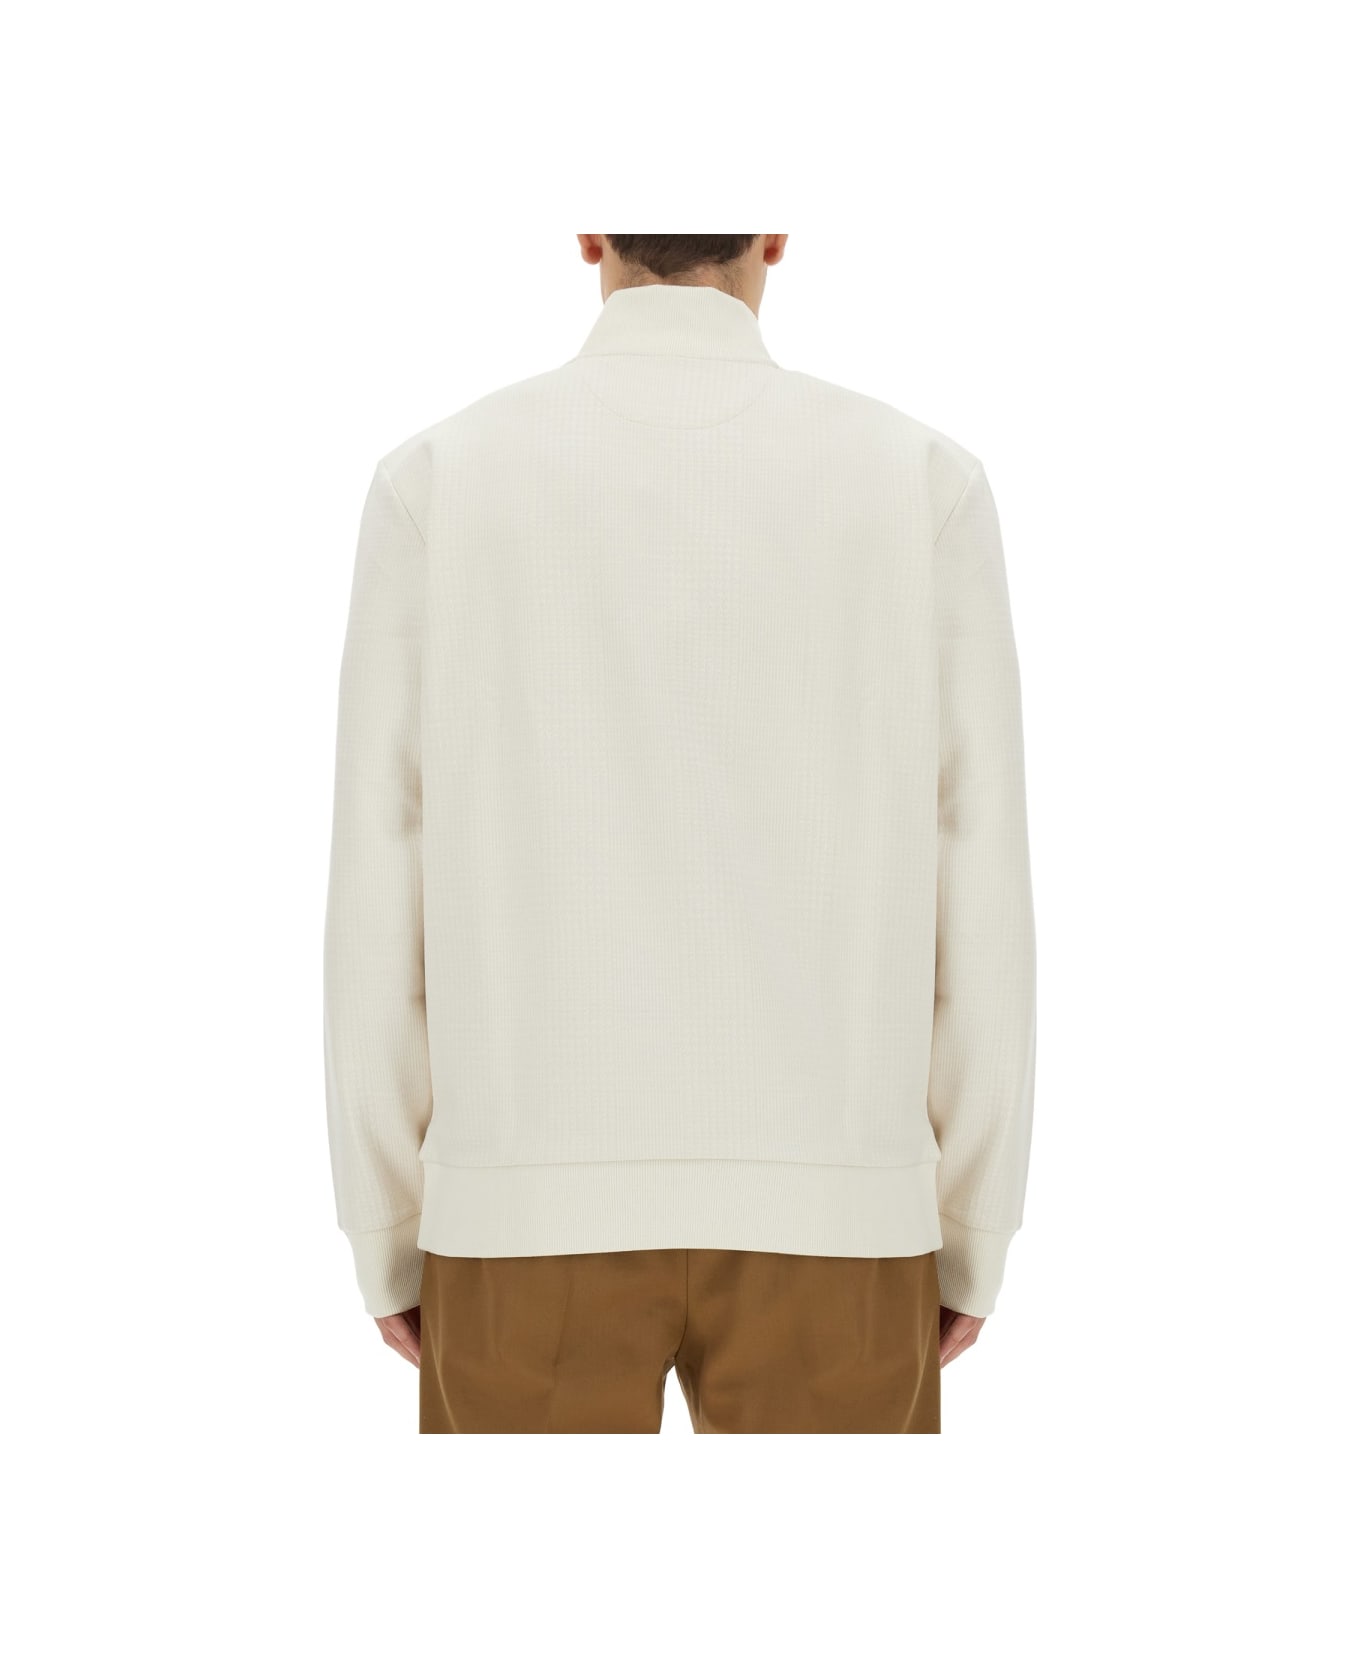 Hugo Boss Sweatshirt With Collar And Zipper - WHITE